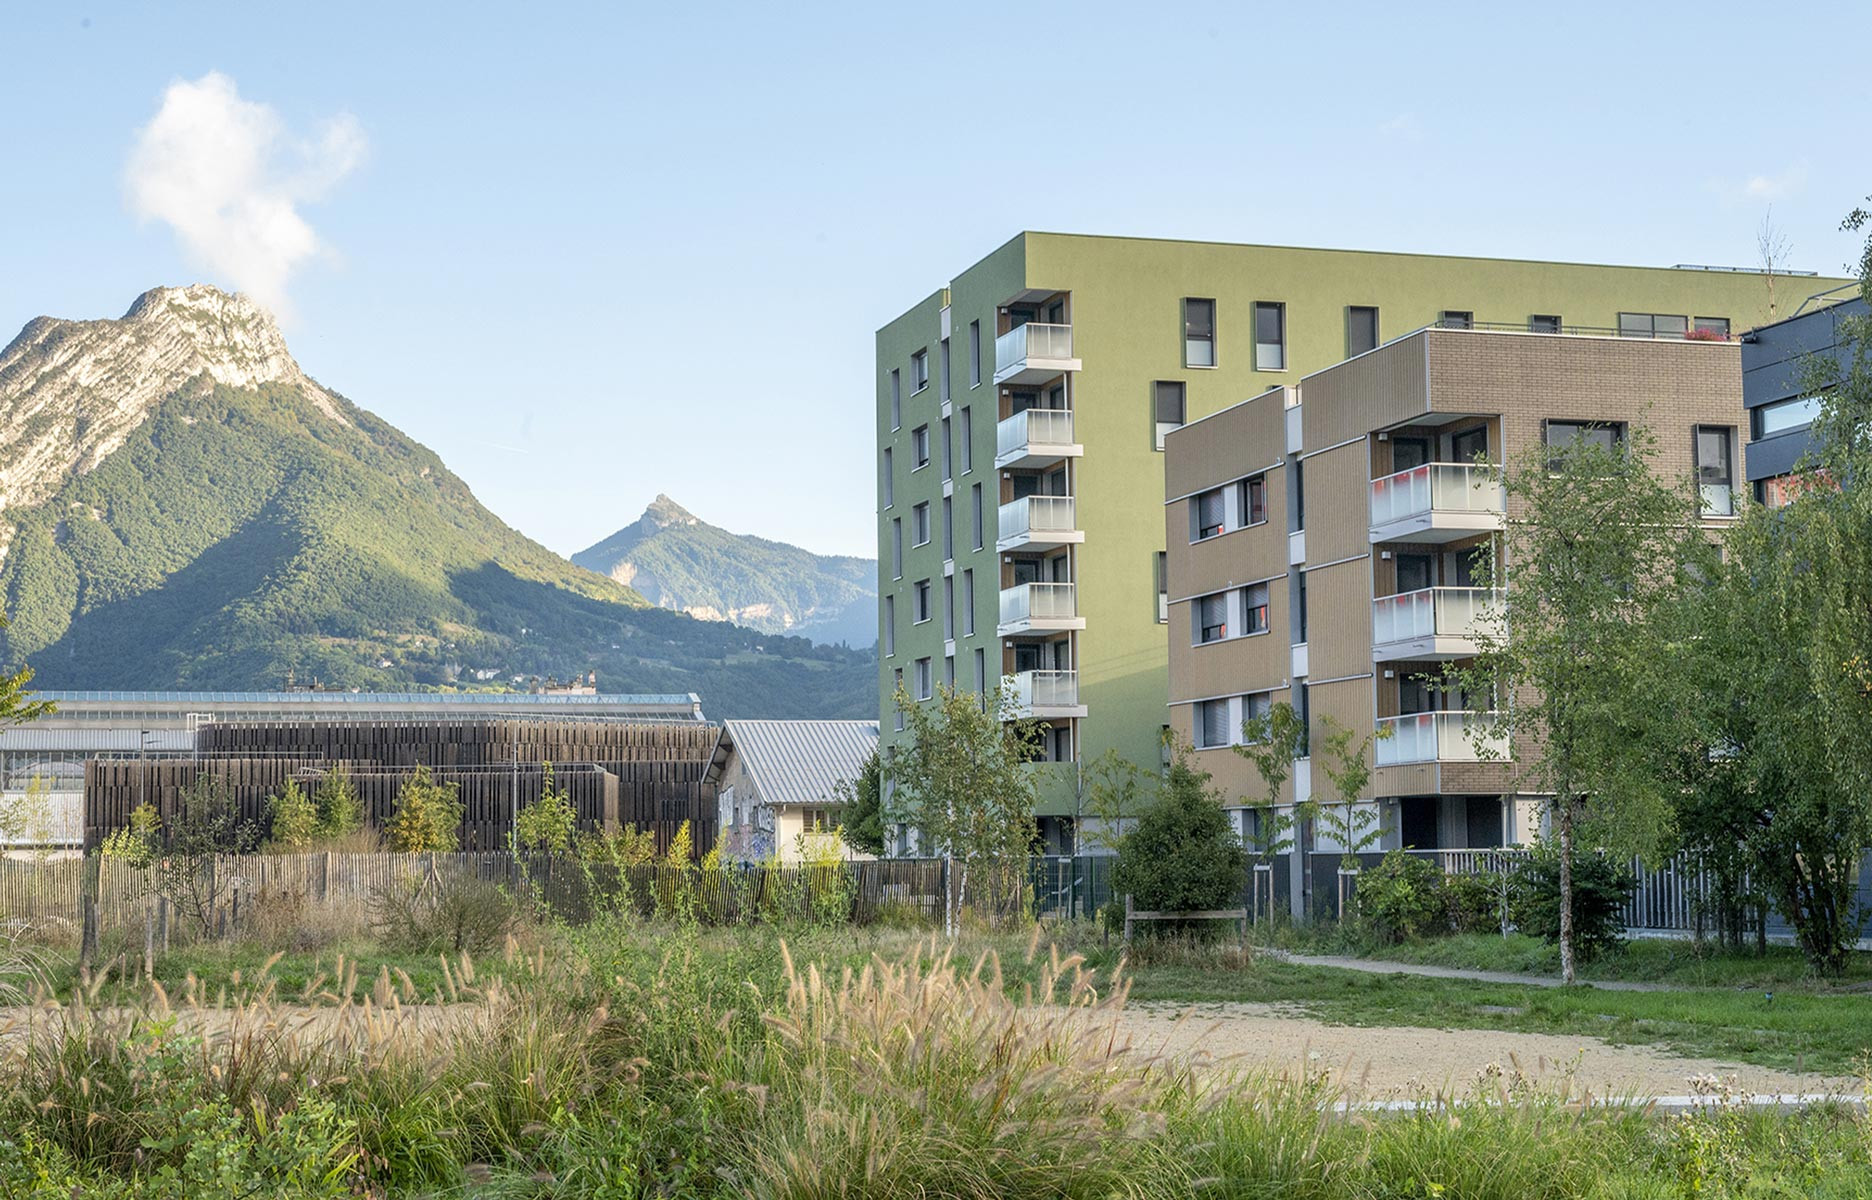 Maximale City Grenoble capitale des Alpes et de l’innovation - the good life